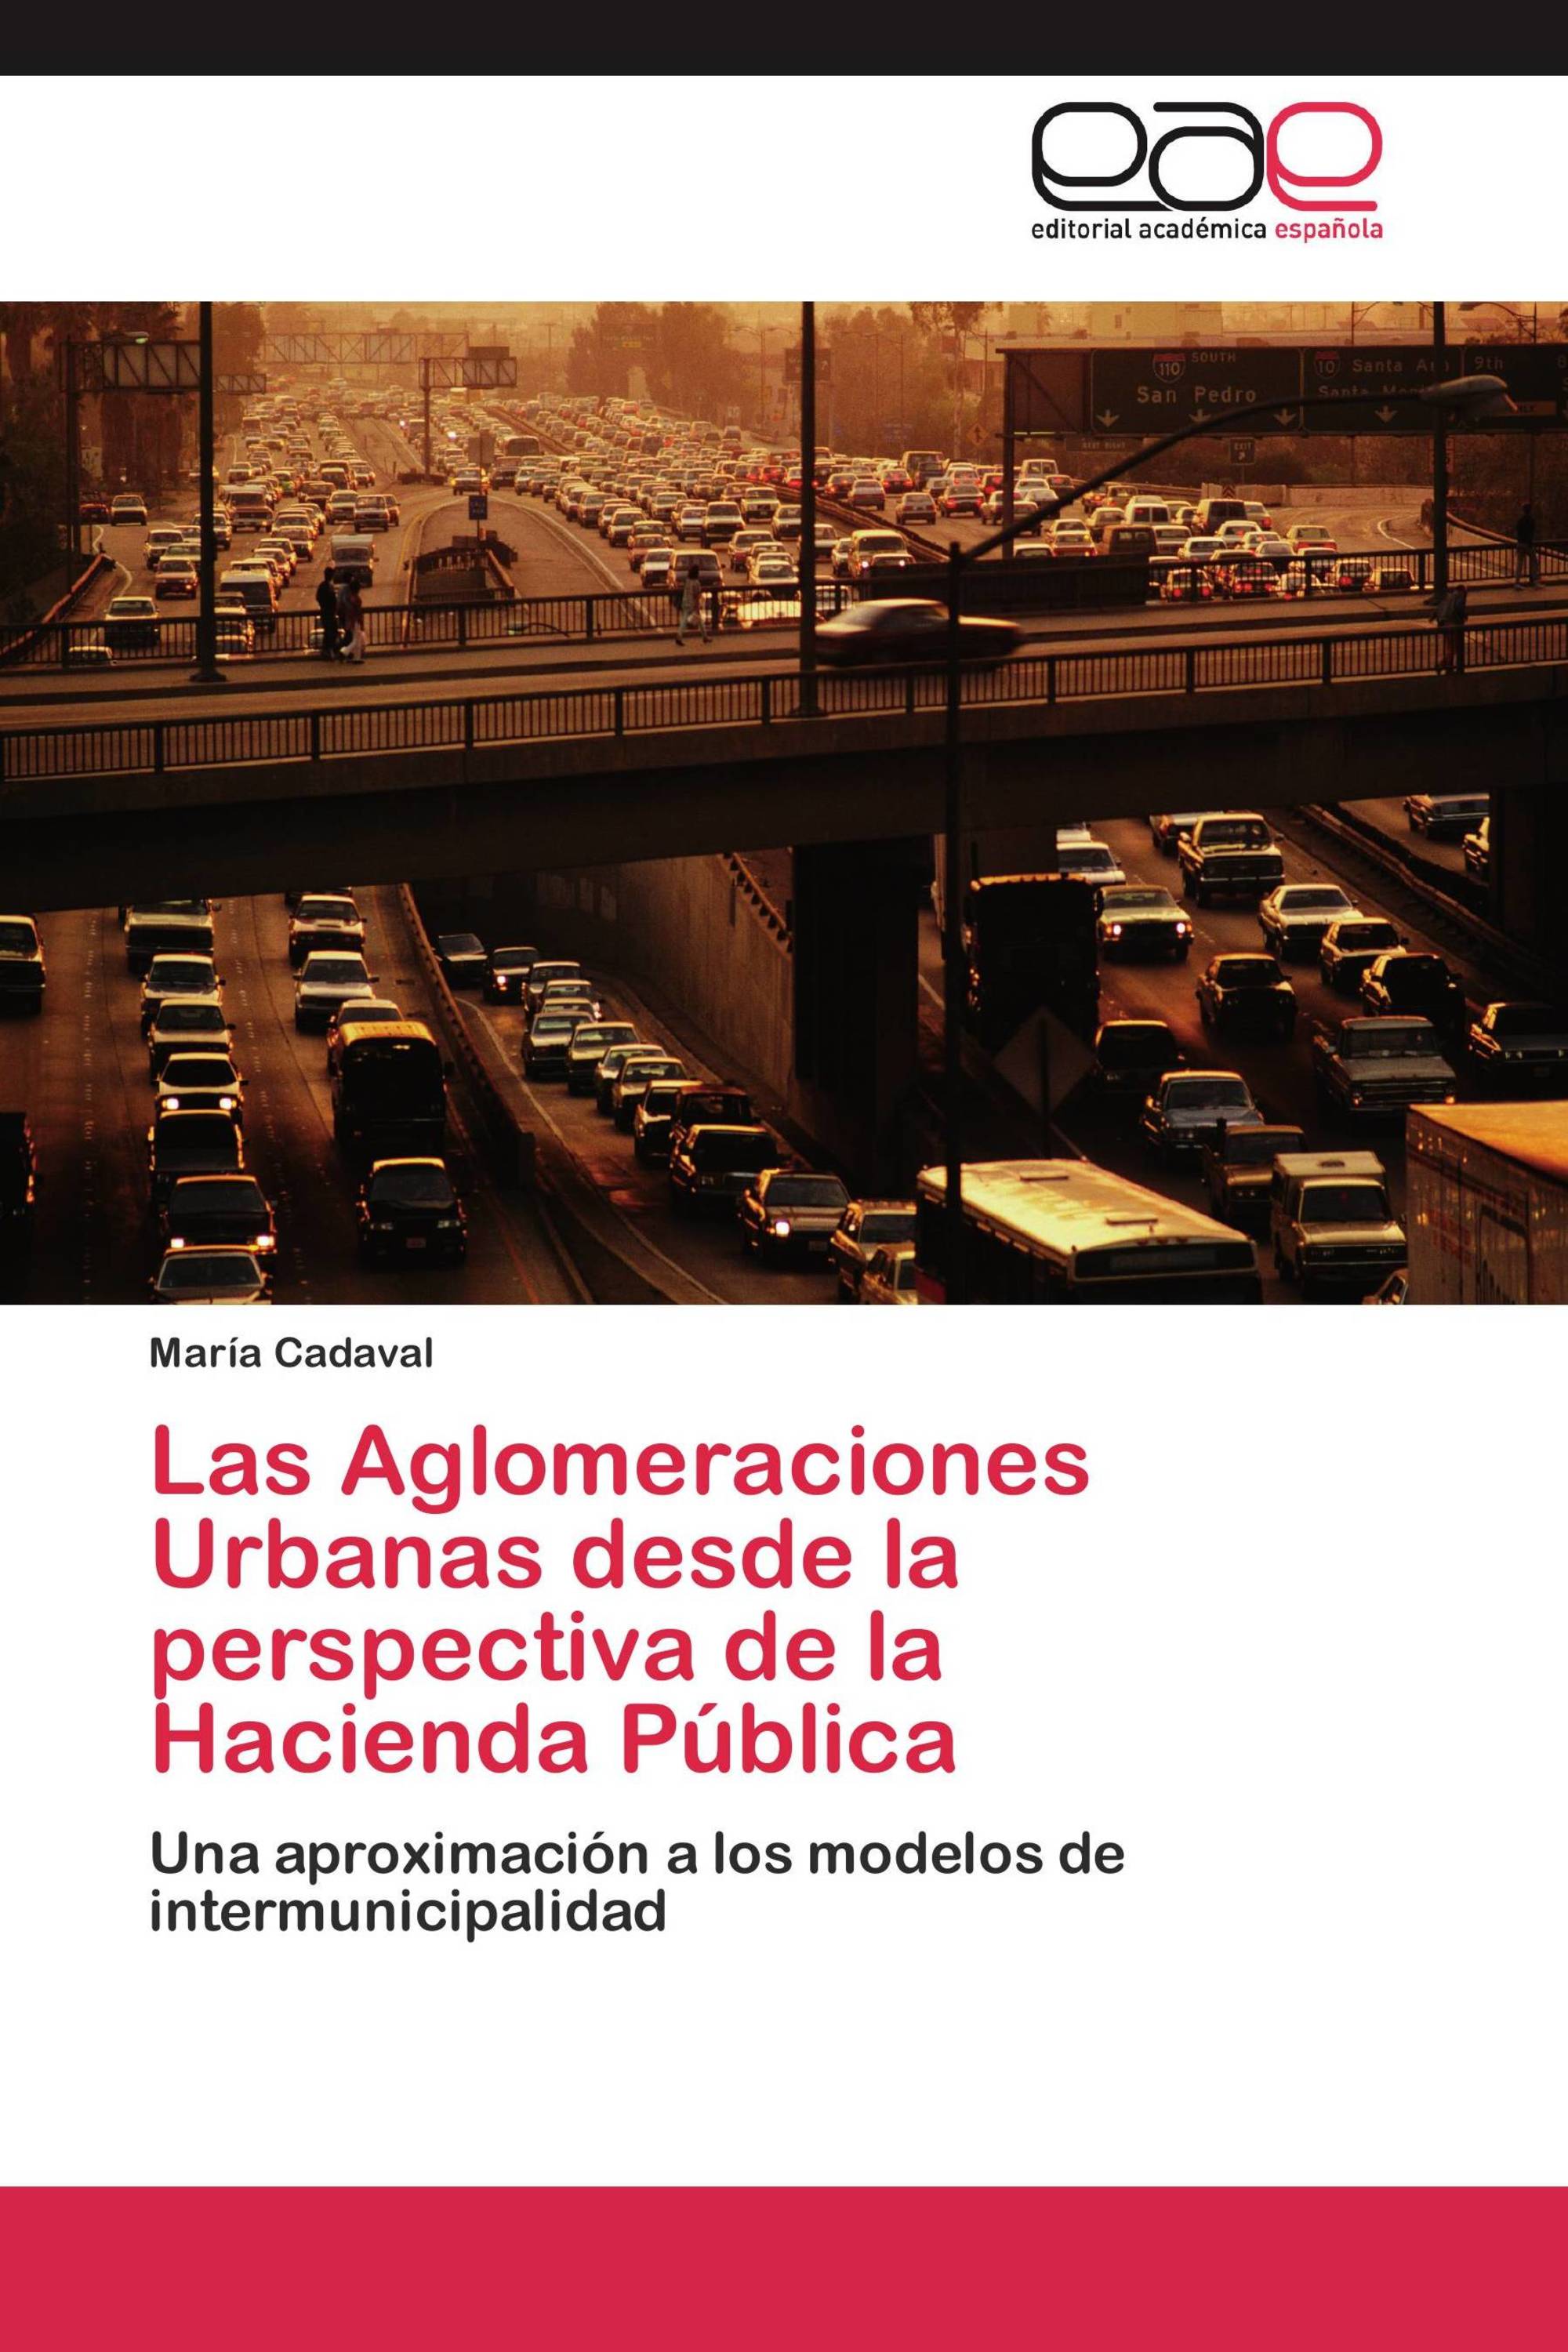 Las Aglomeraciones Urbanas desde la perspectiva de la Hacienda Pública